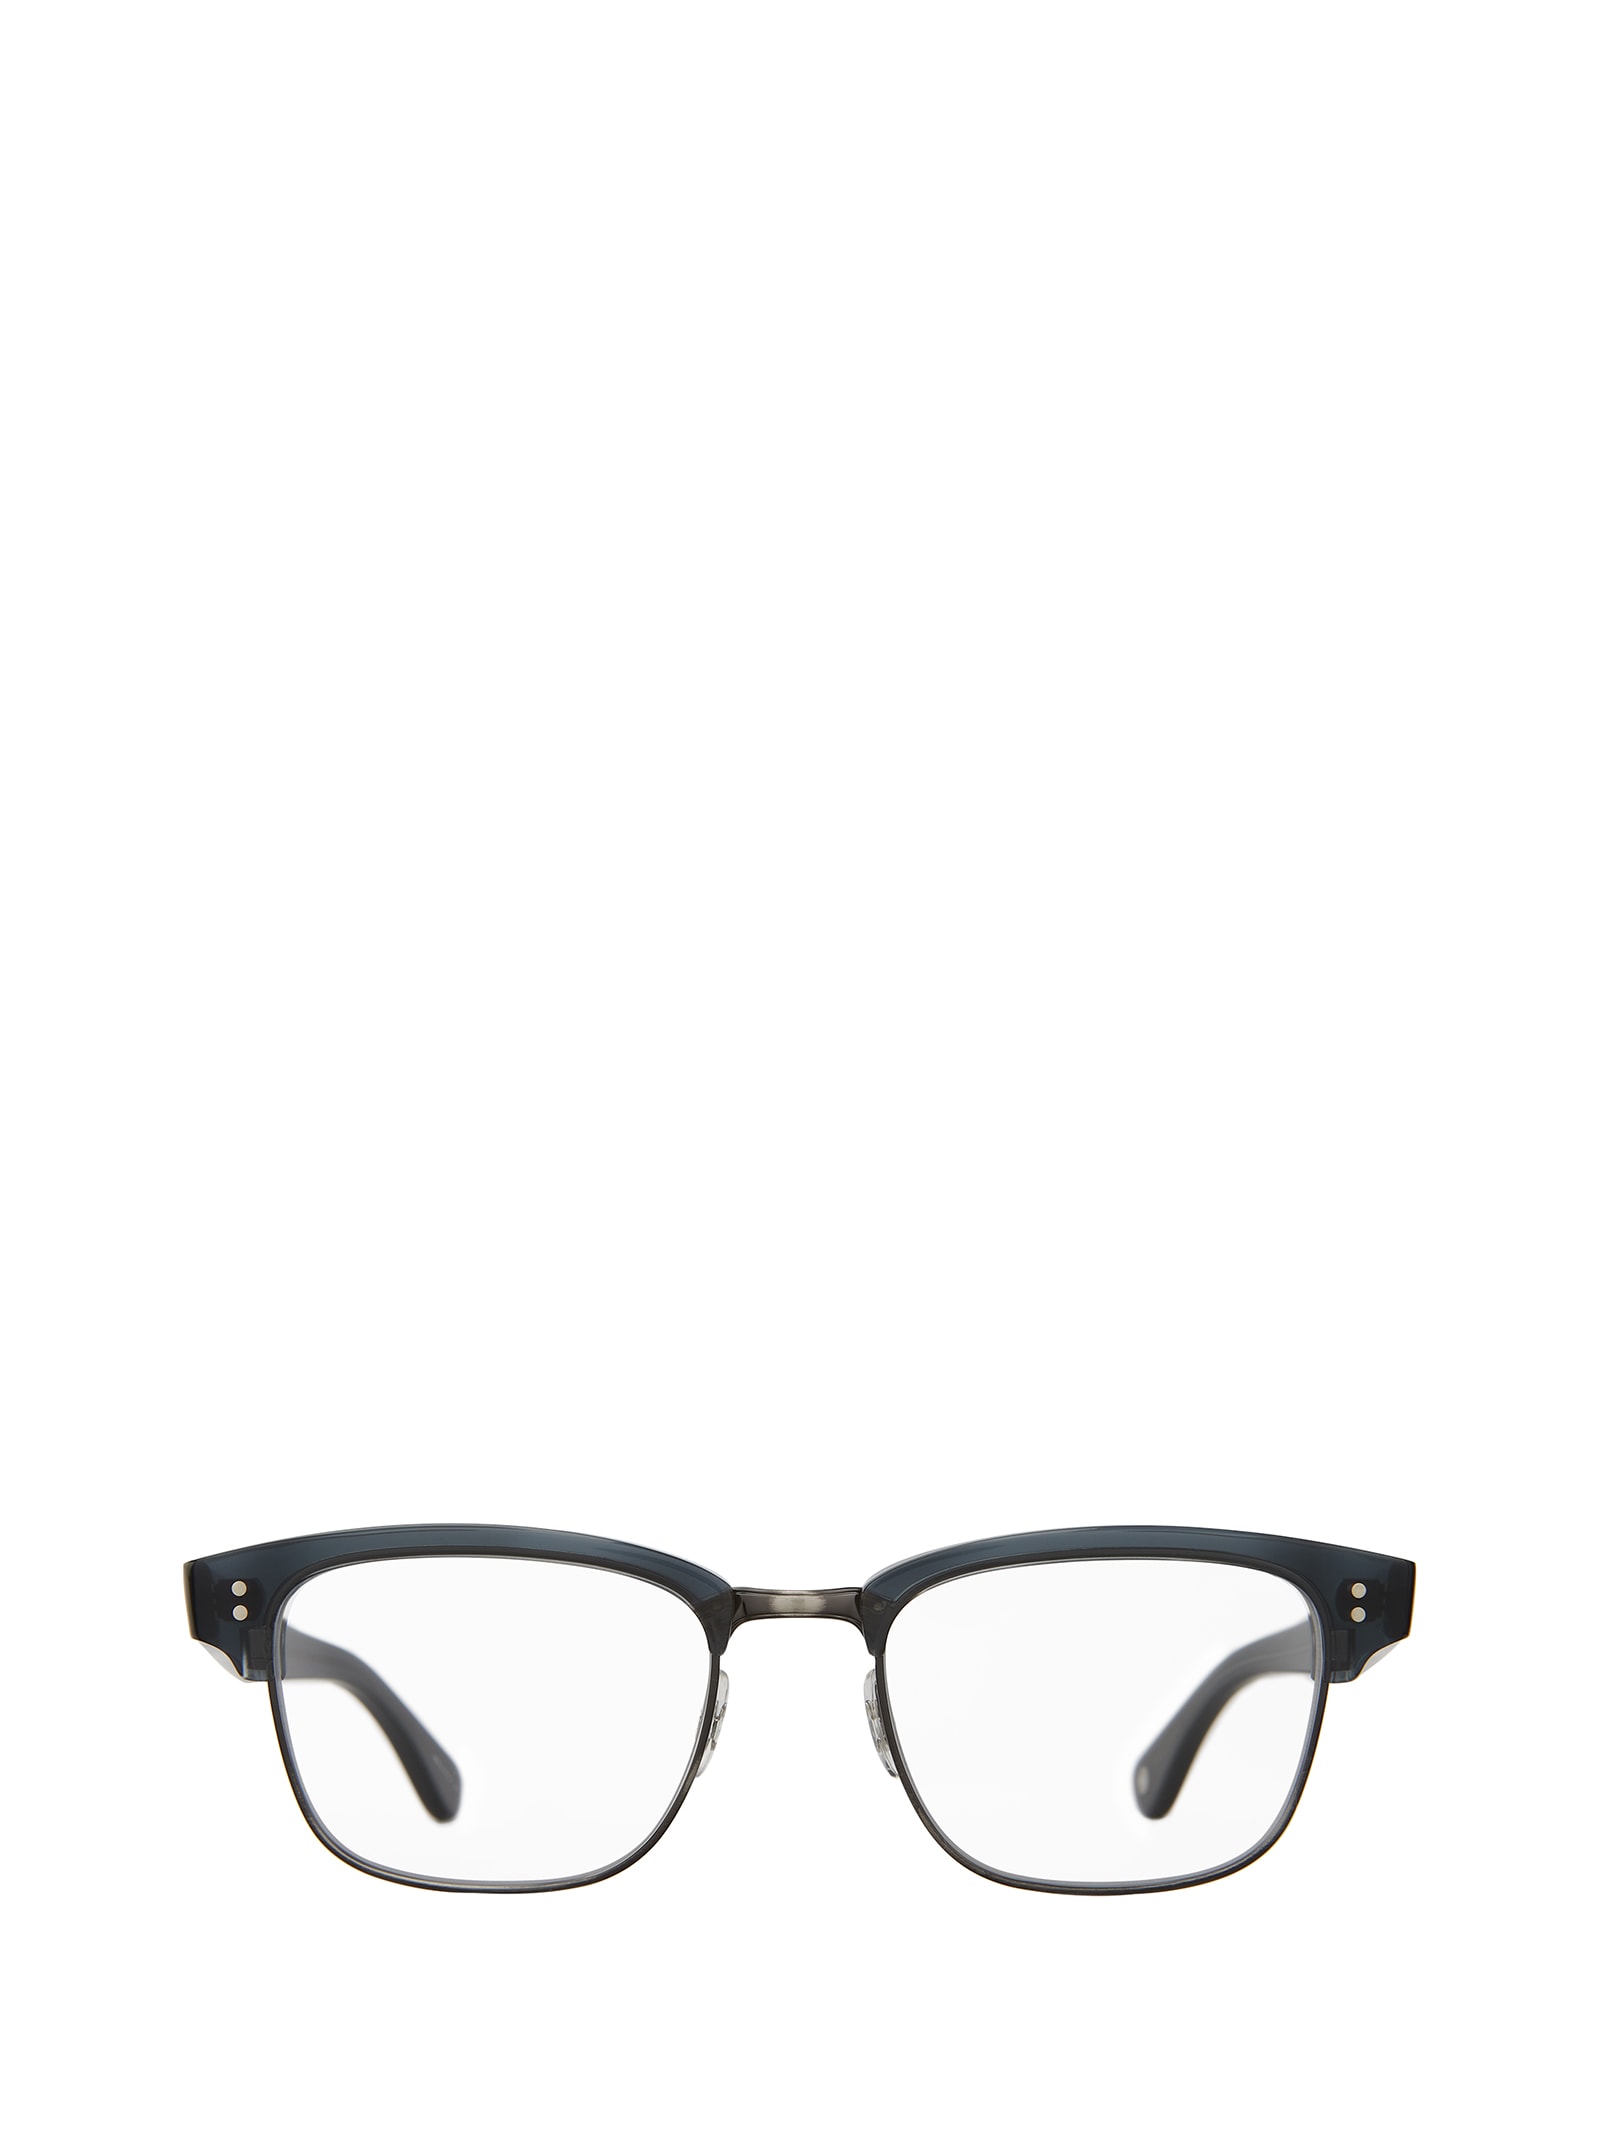 Garrett Leight Gibson Navy - Pewter Glasses